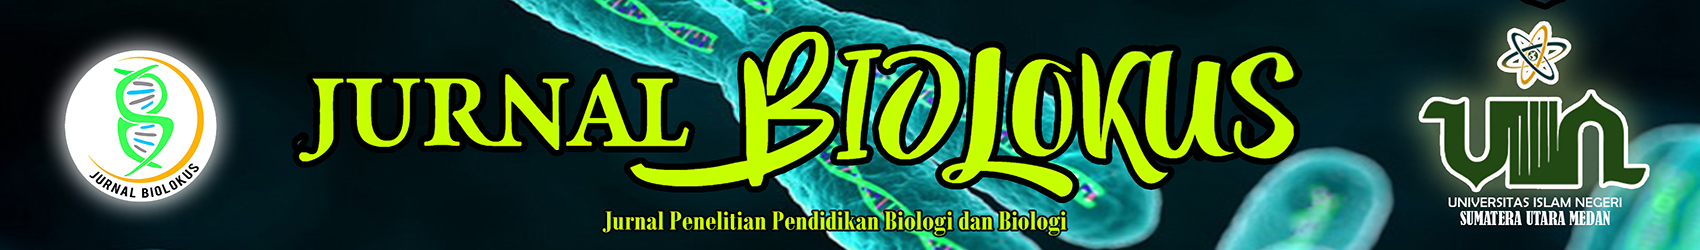 Biolokus : Jurnal Penelitian Pendidikan Biologi dan Biologi